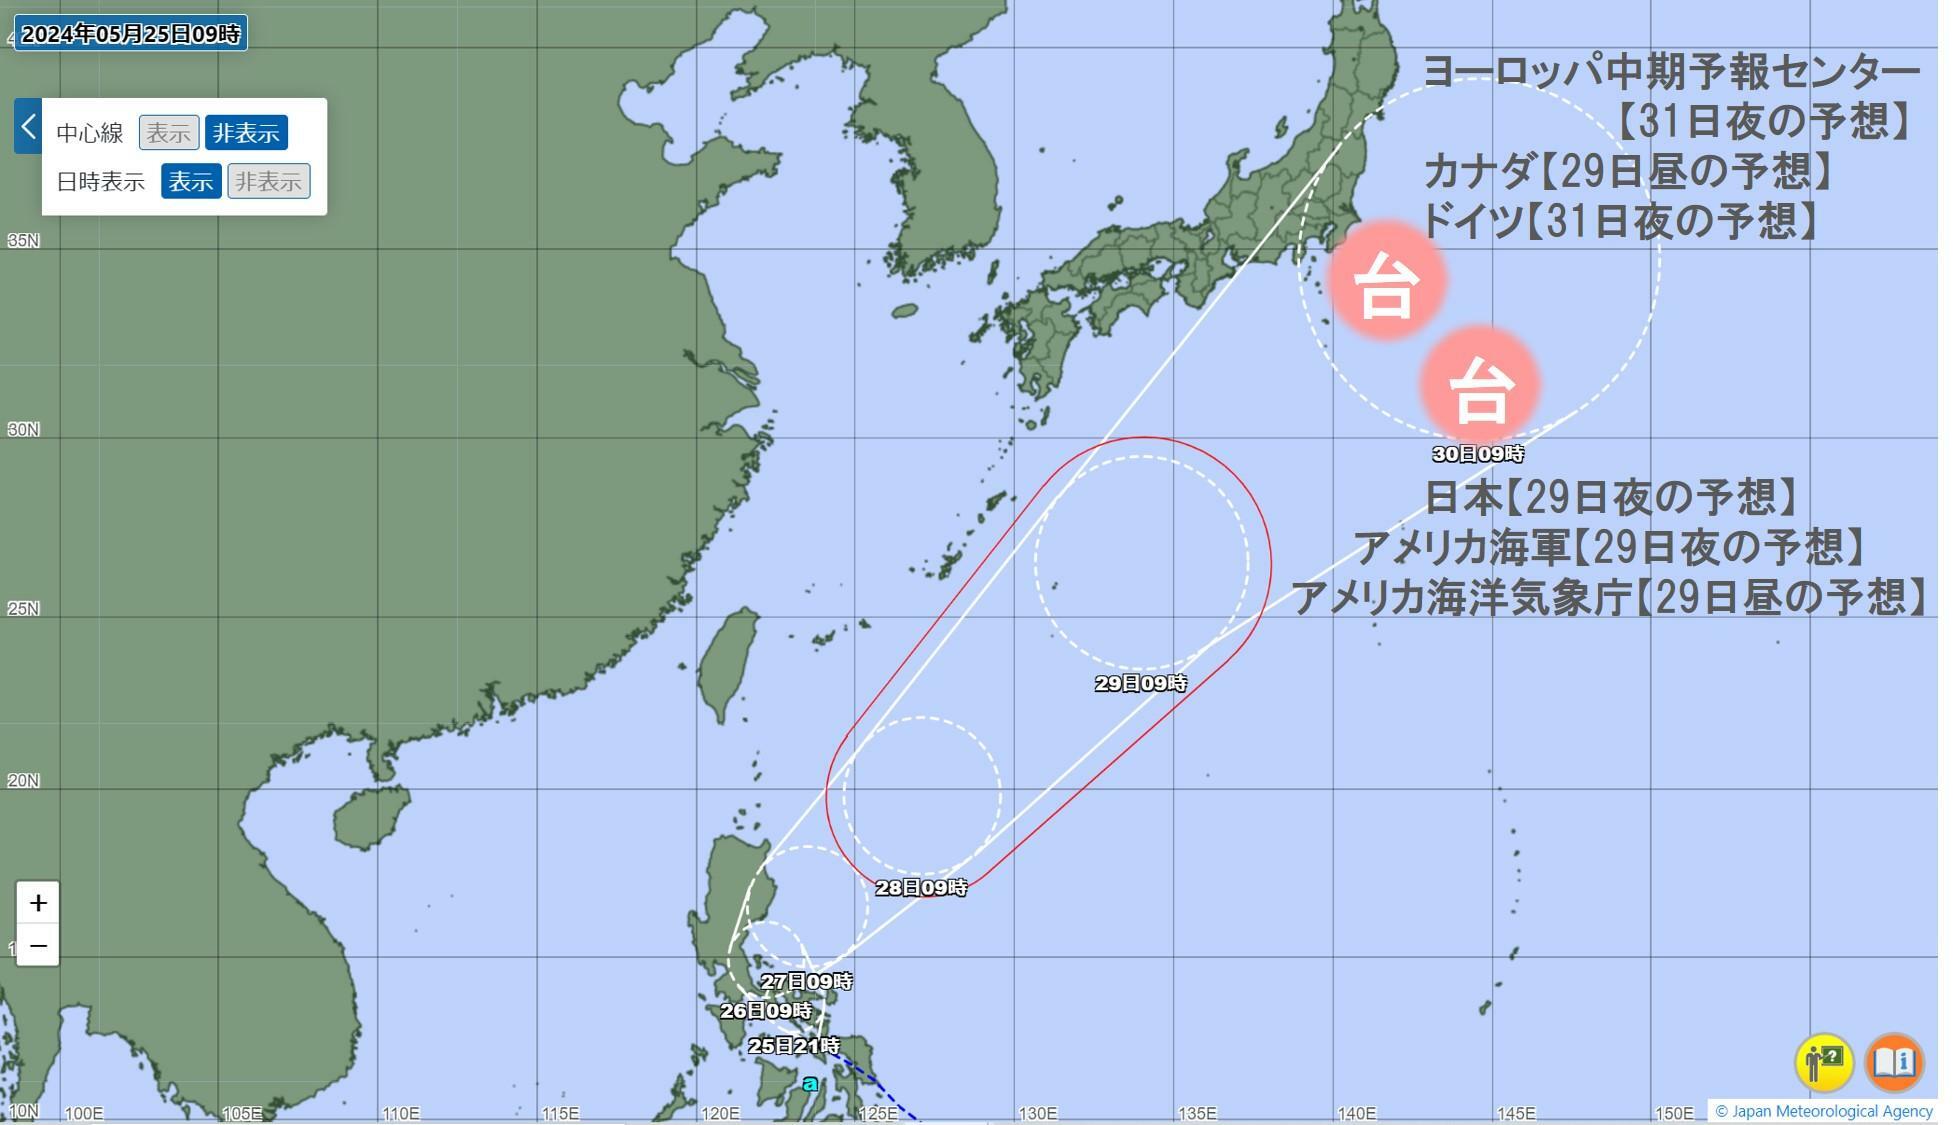 25日9時の台風情報に各国の気象当局が公表している予想を追記。それぞれ関東への最接近予想日時が異なるため、日時を併記している。